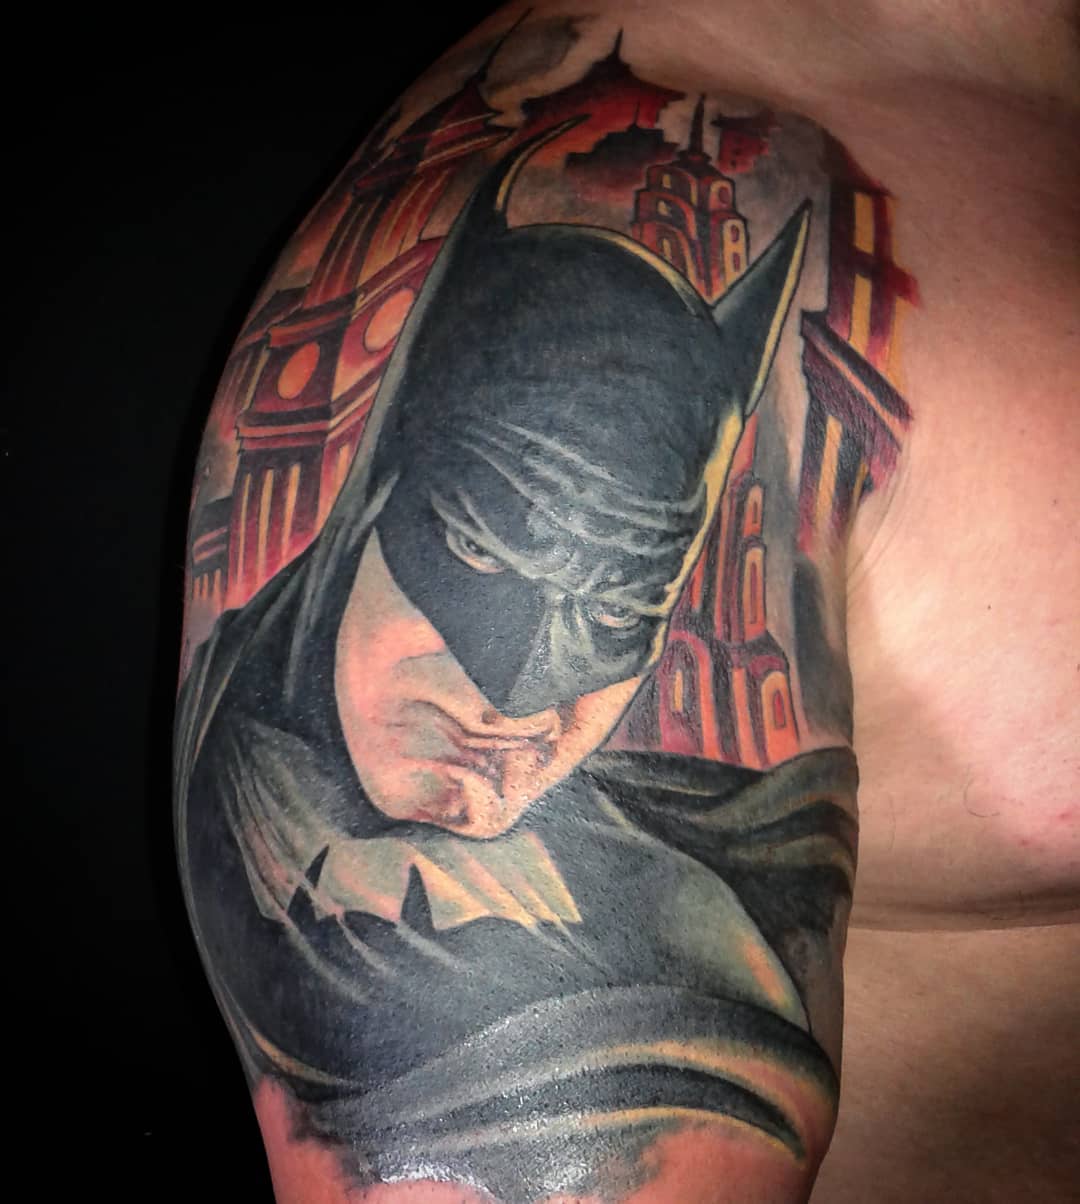 Batman Tattoo Design